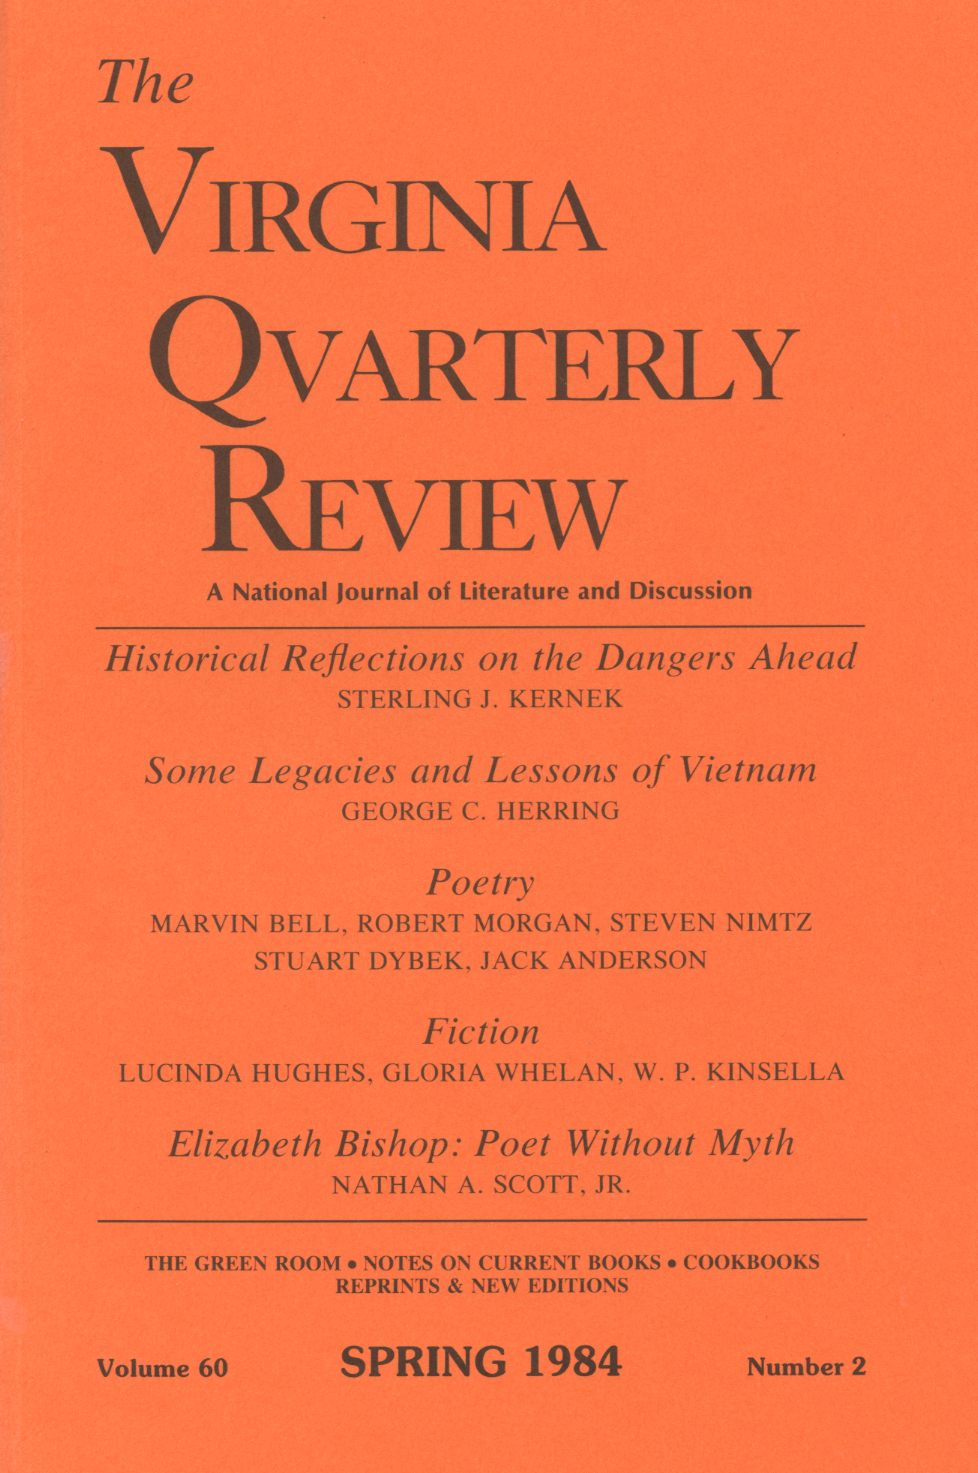 Virginia Quarterly Review, Spring 1984 cover